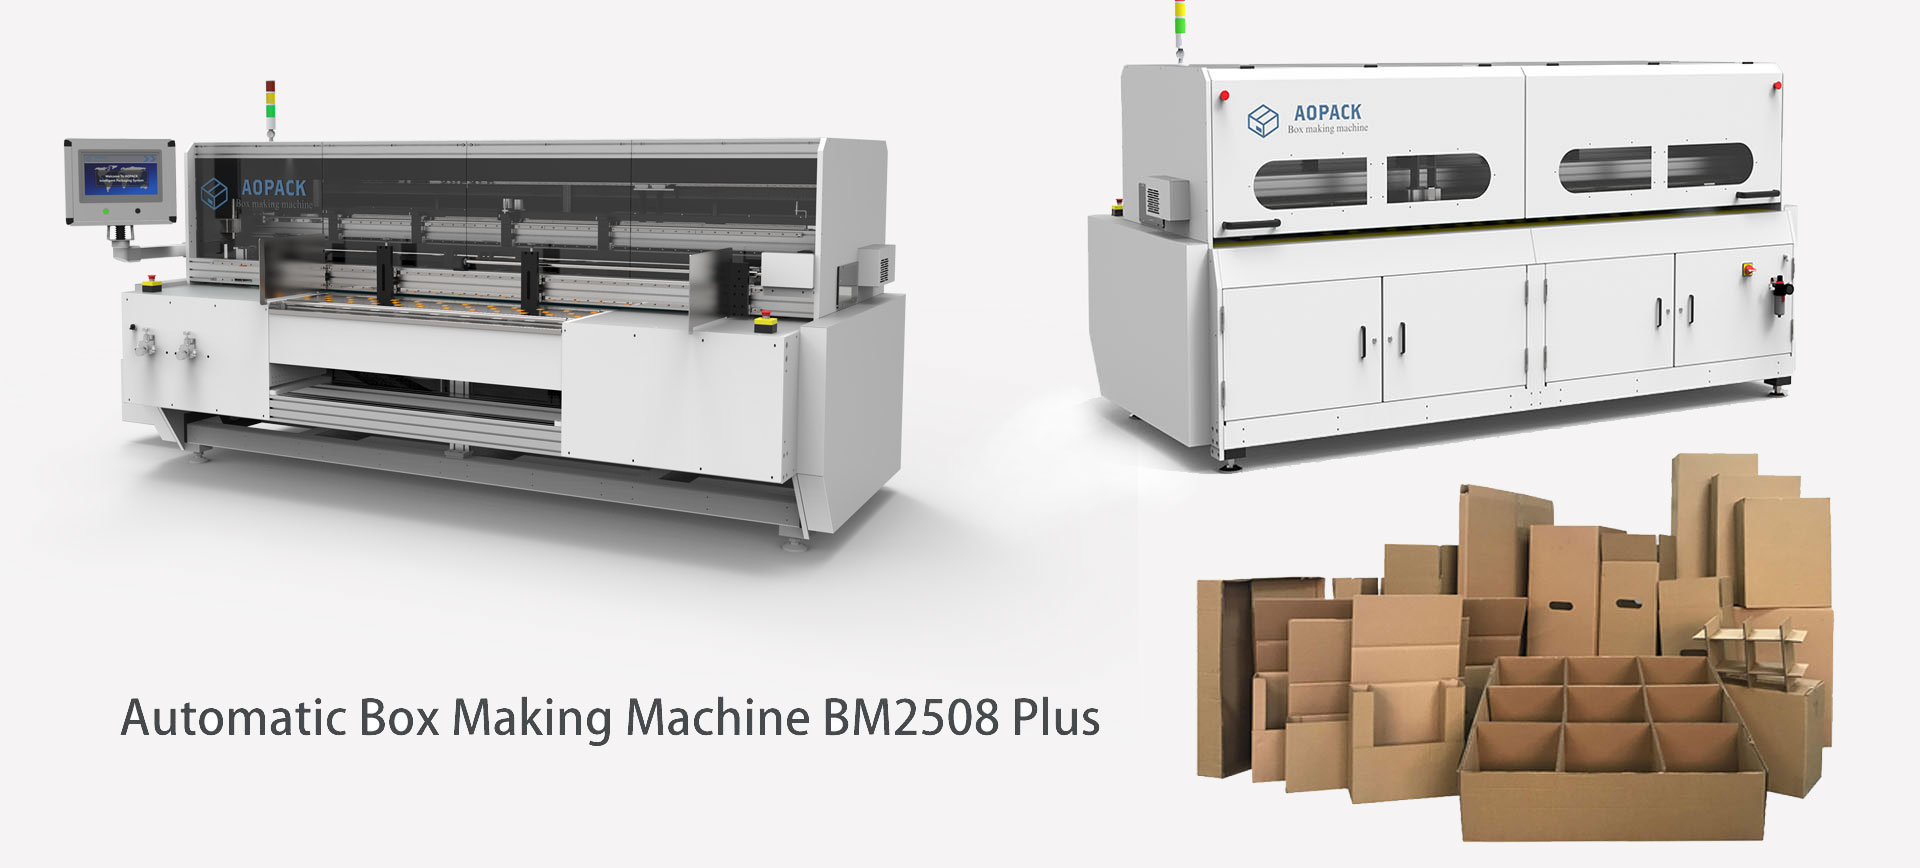 BM2508 Plus box making machine